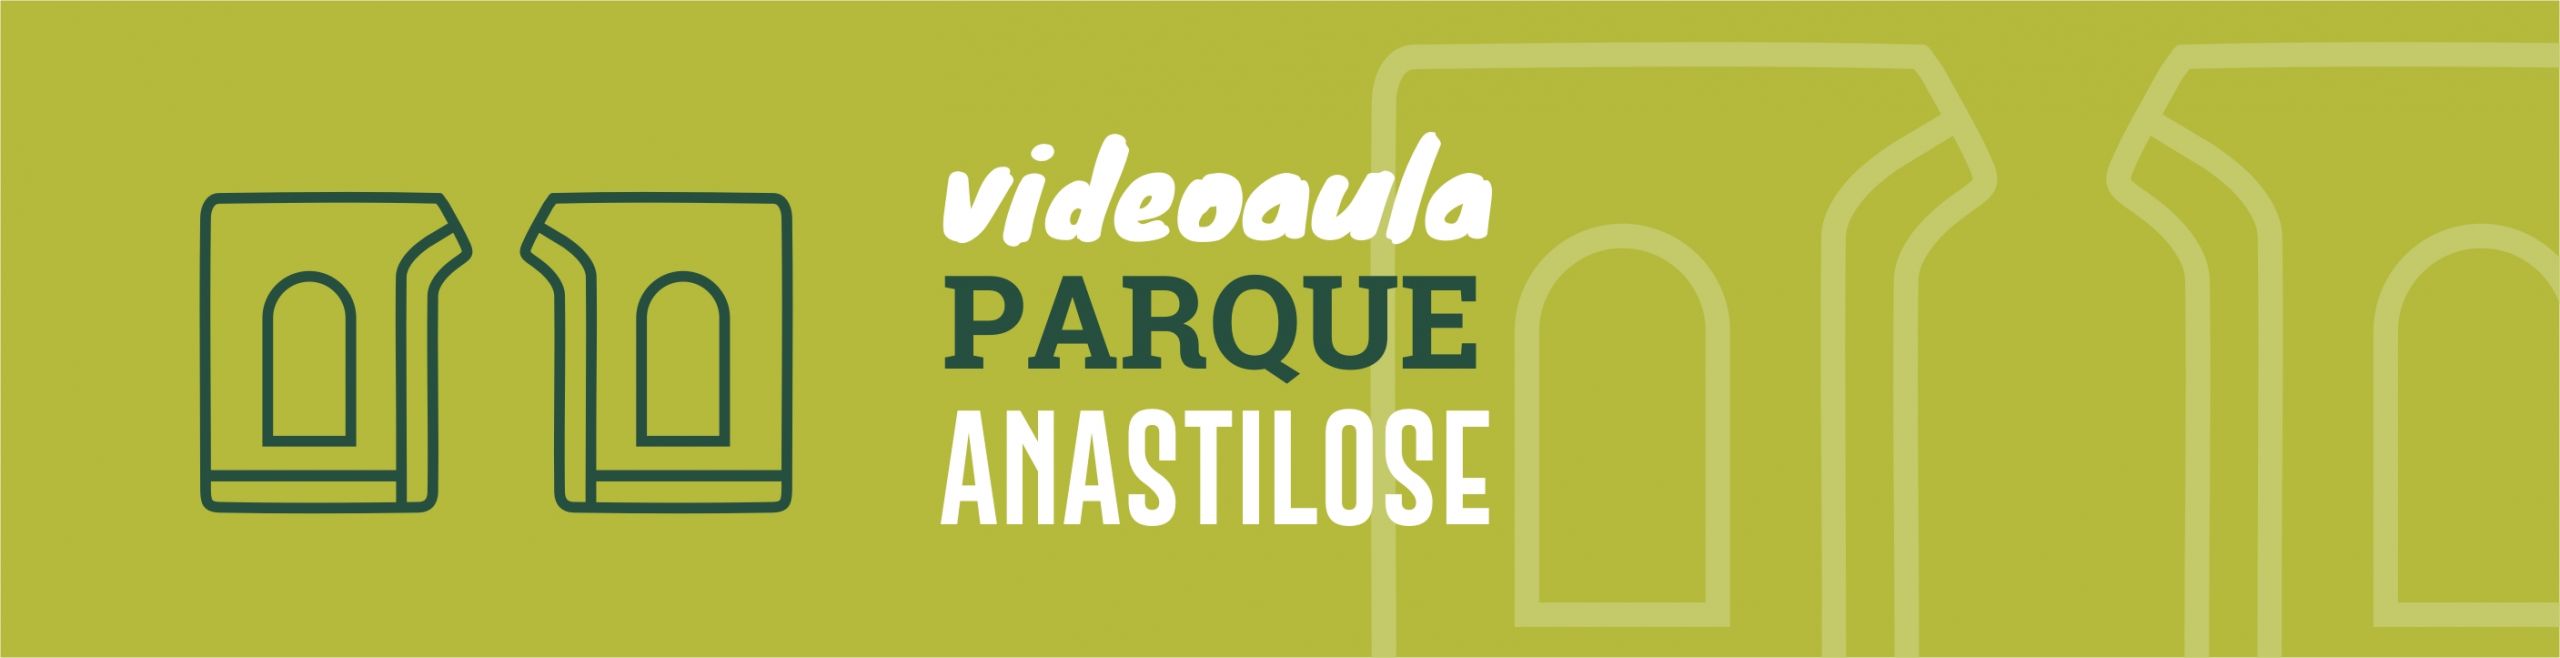 Vídeoaula Parque Anastilose